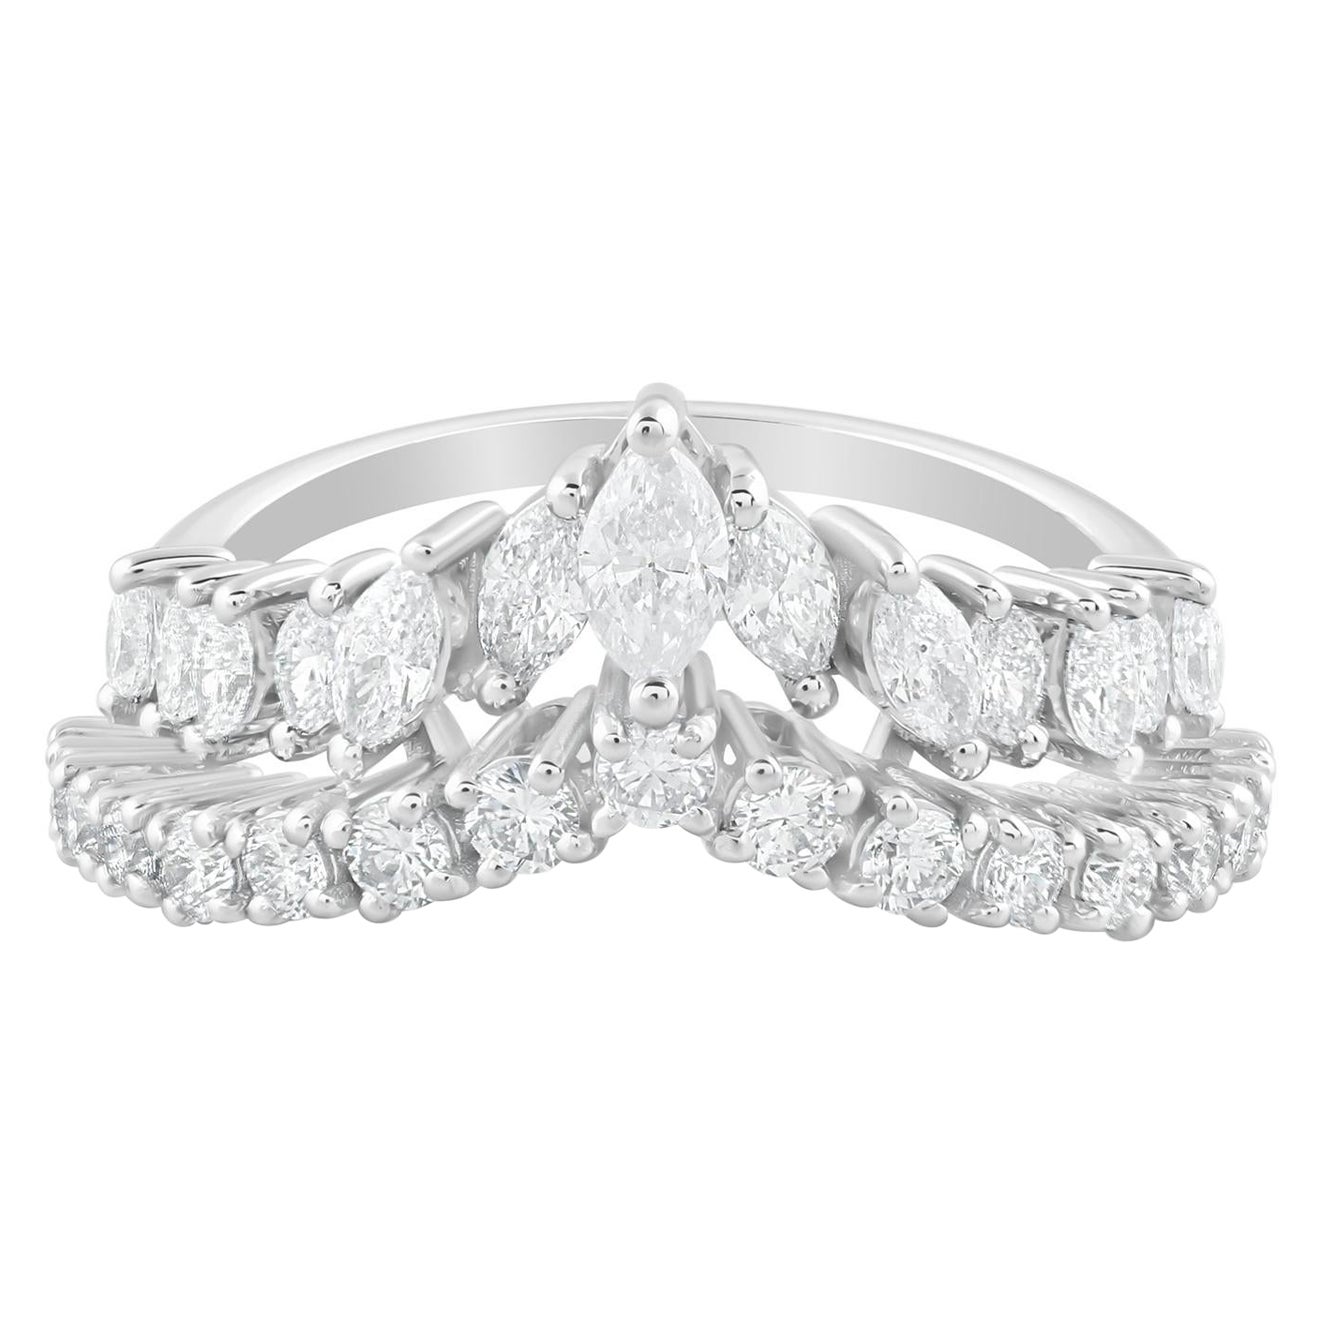 Natural 1.30 Carat Diamond Chevron Ring 18 Karat White Gold Handmade Jewelry